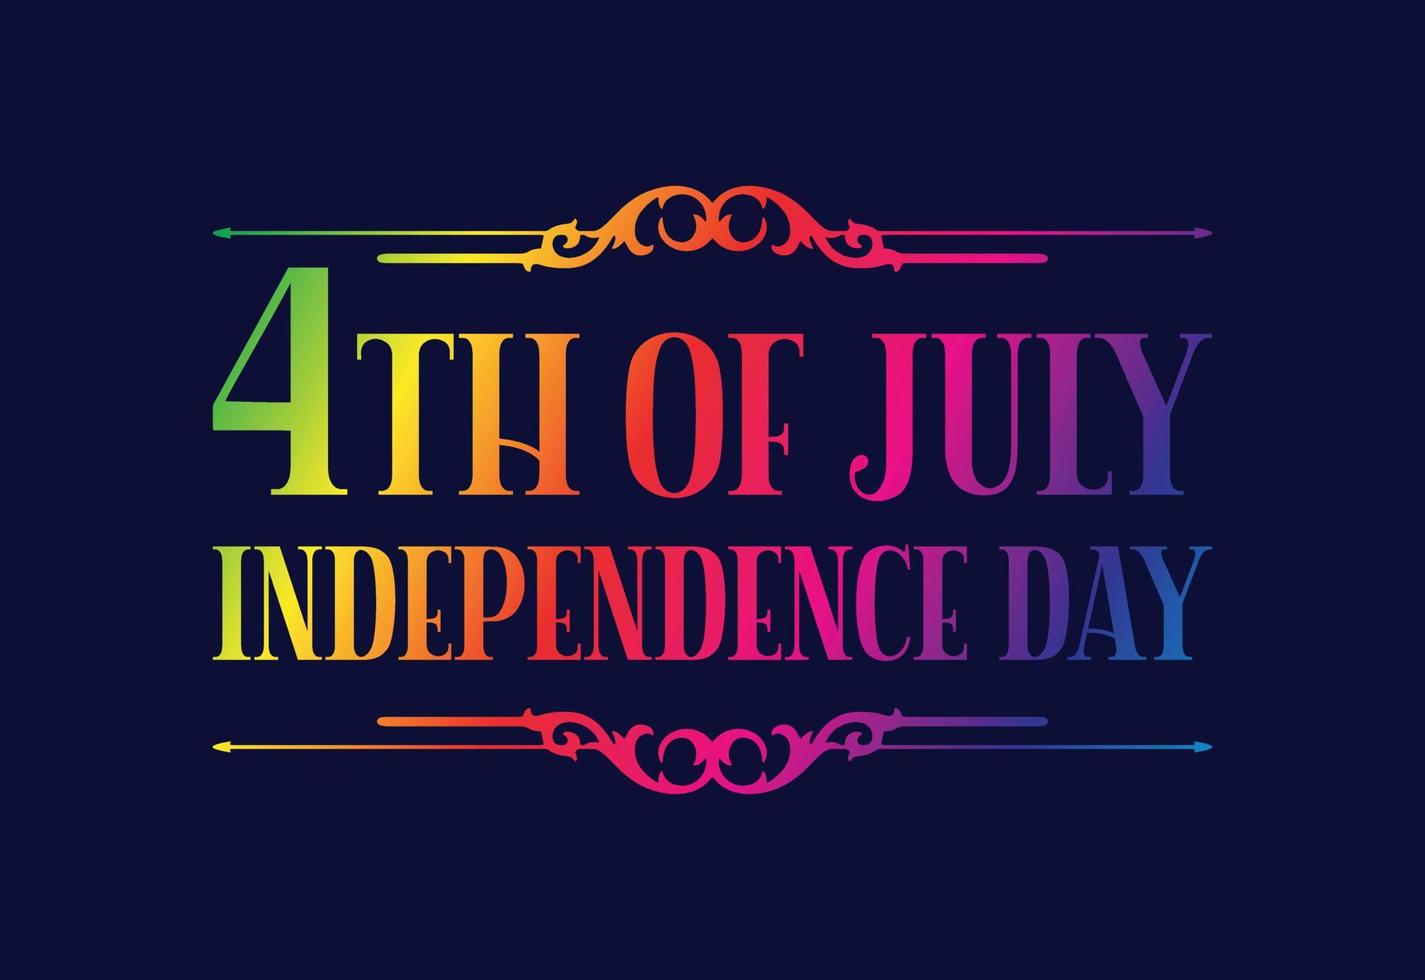 felice festa dell'indipendenza, 4 luglio festa nazionale. illustrazione vettoriale di disegno di testo di lettere